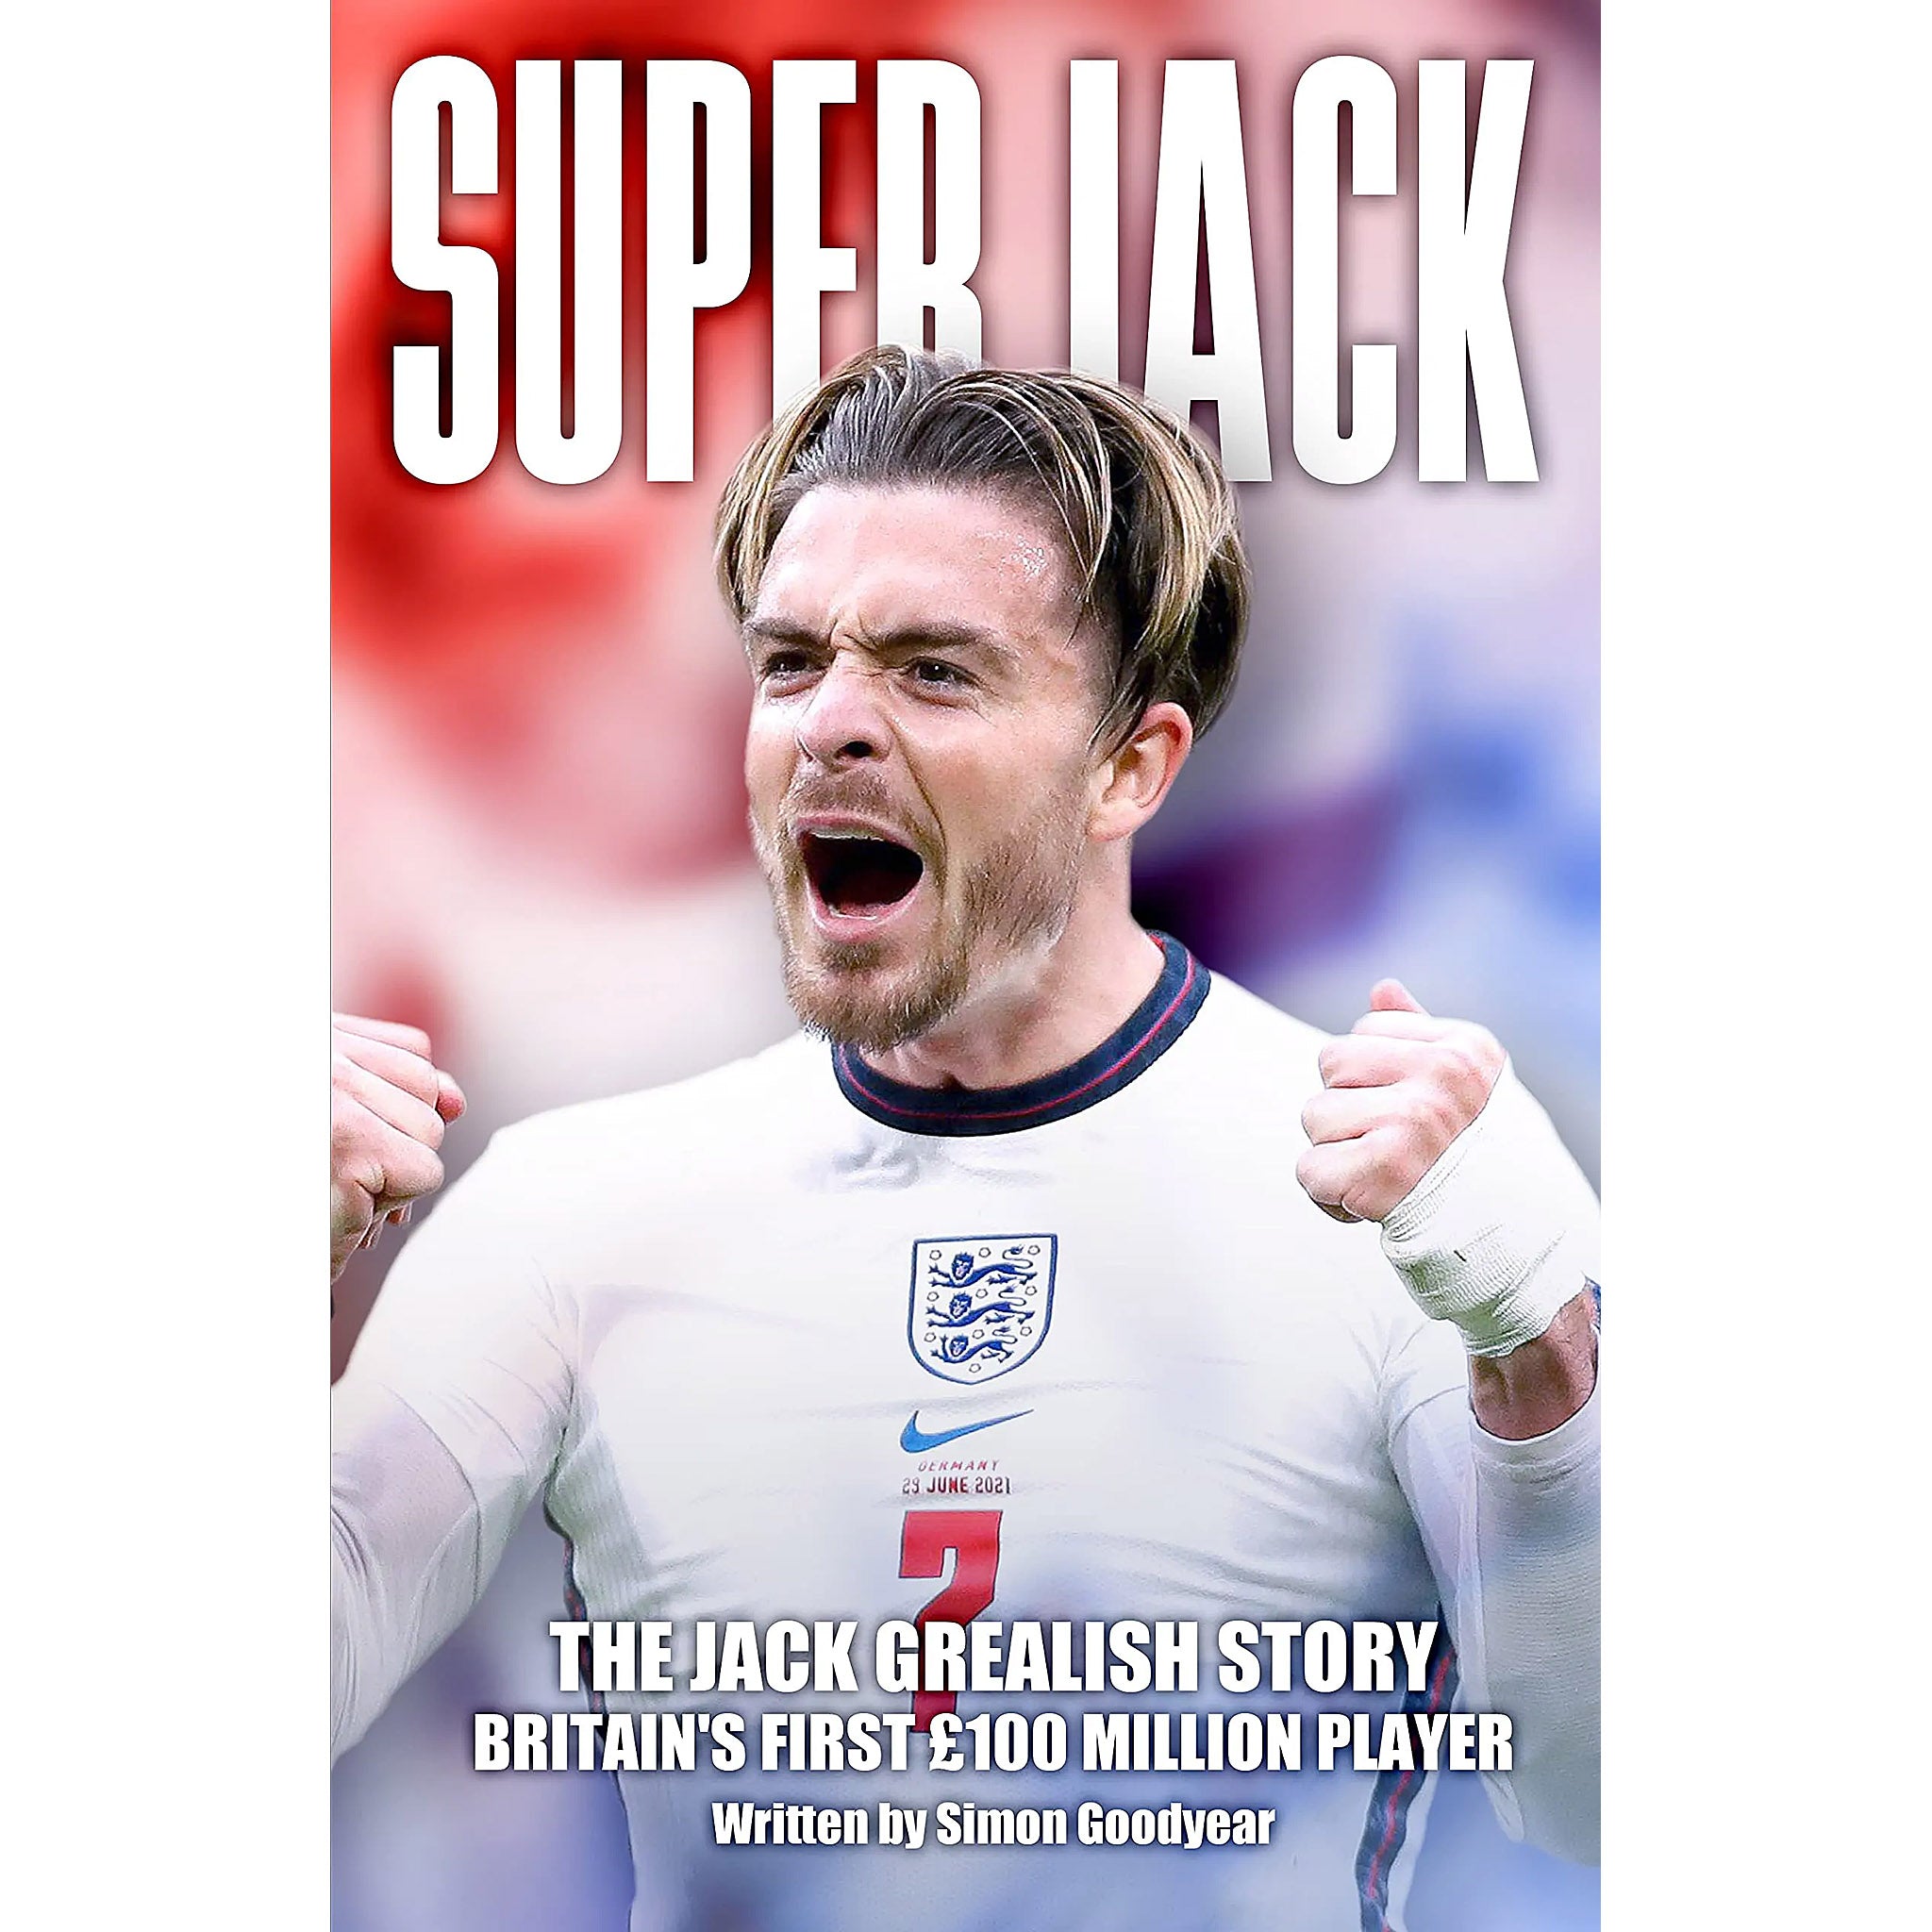 Super Jack – The Jack Grealish Story